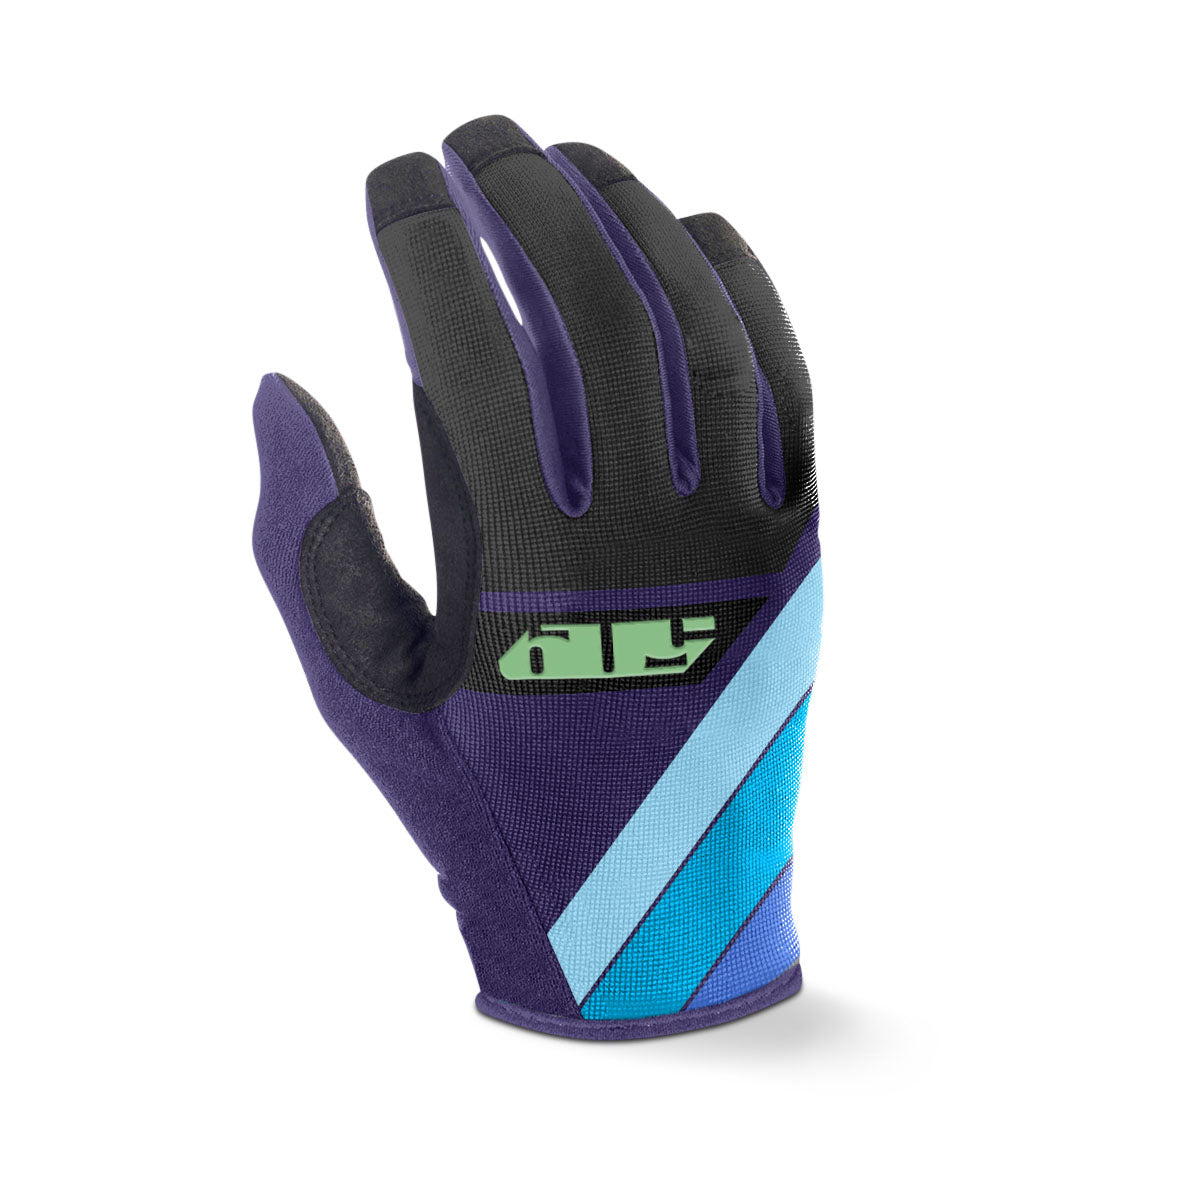 4 Low Gloves - Ultraviolet / SM